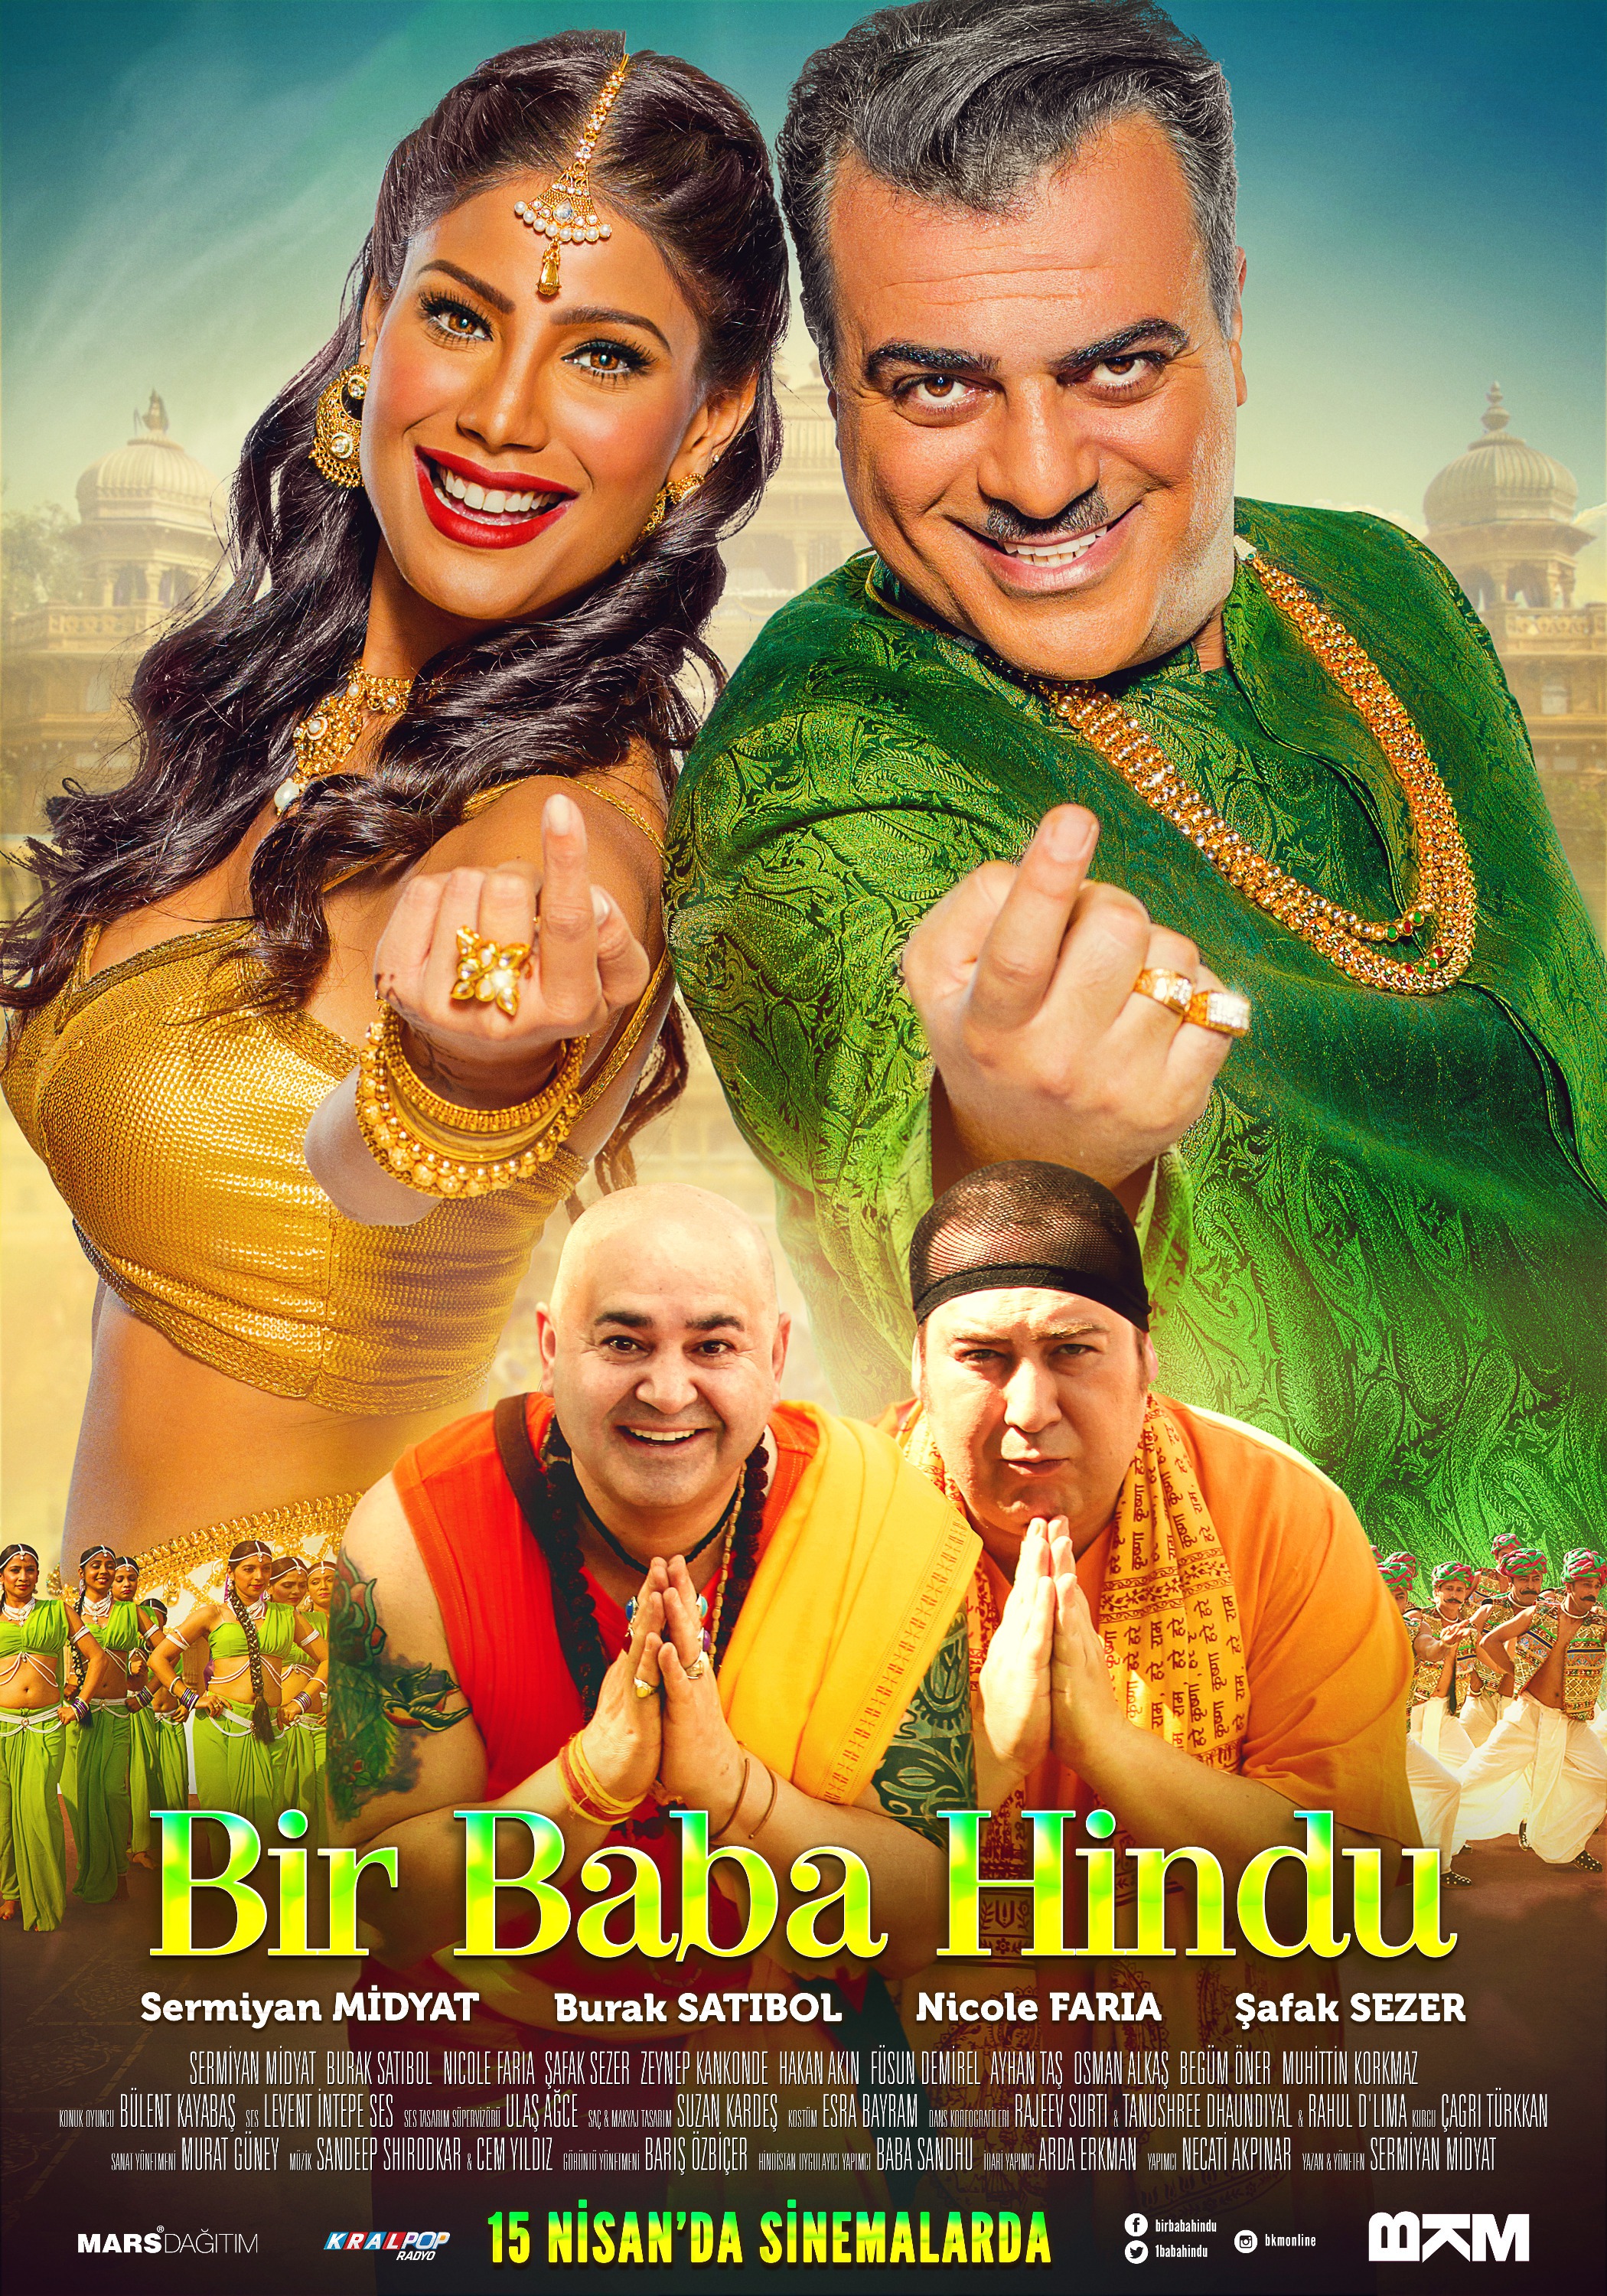 Mega Sized Movie Poster Image for Bir Baba Hindu (#2 of 2)